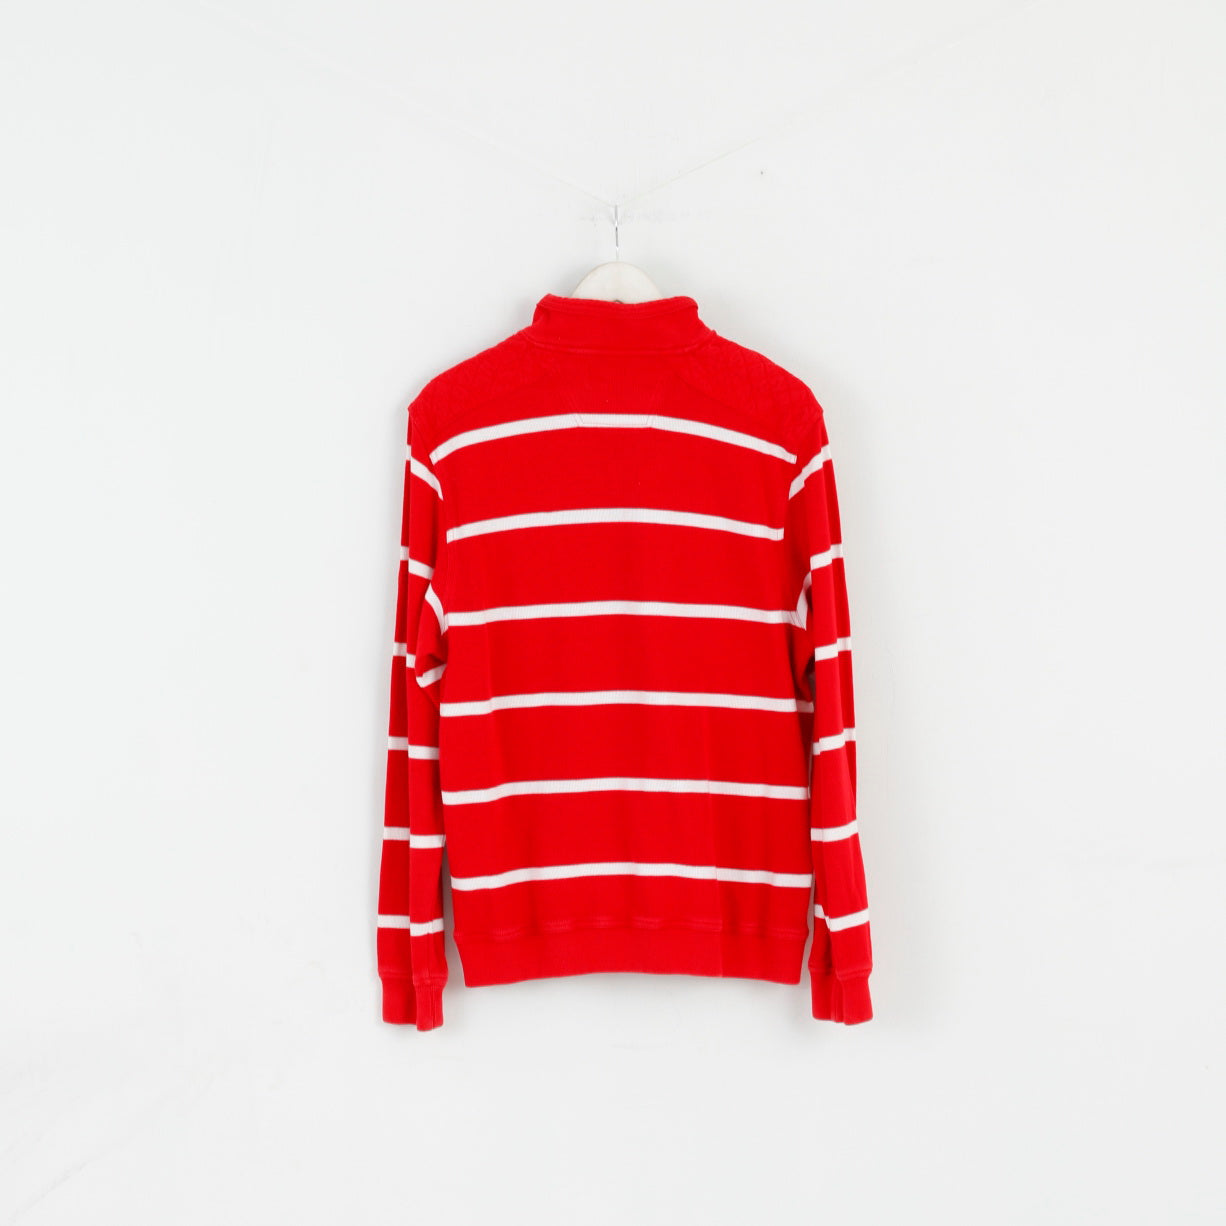 Pierre Cardin Hommes M Jumper Rouge Rayé Coton Français Style Zip Neck Sweater